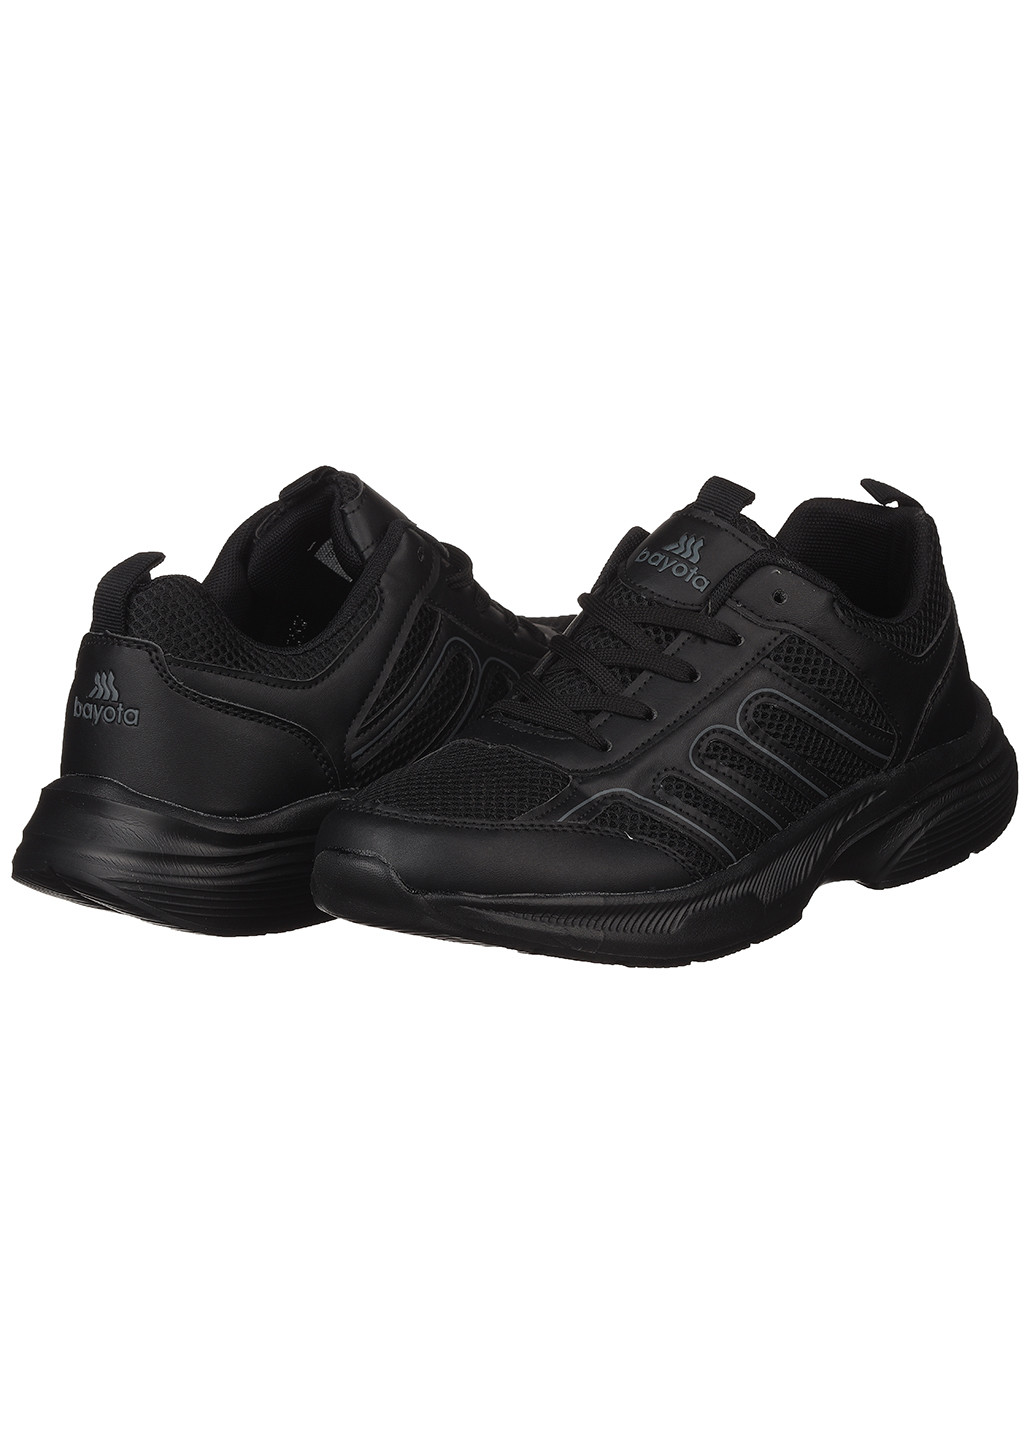 Черные демисезонные кроссовки из текстиля для мужчин Bayota